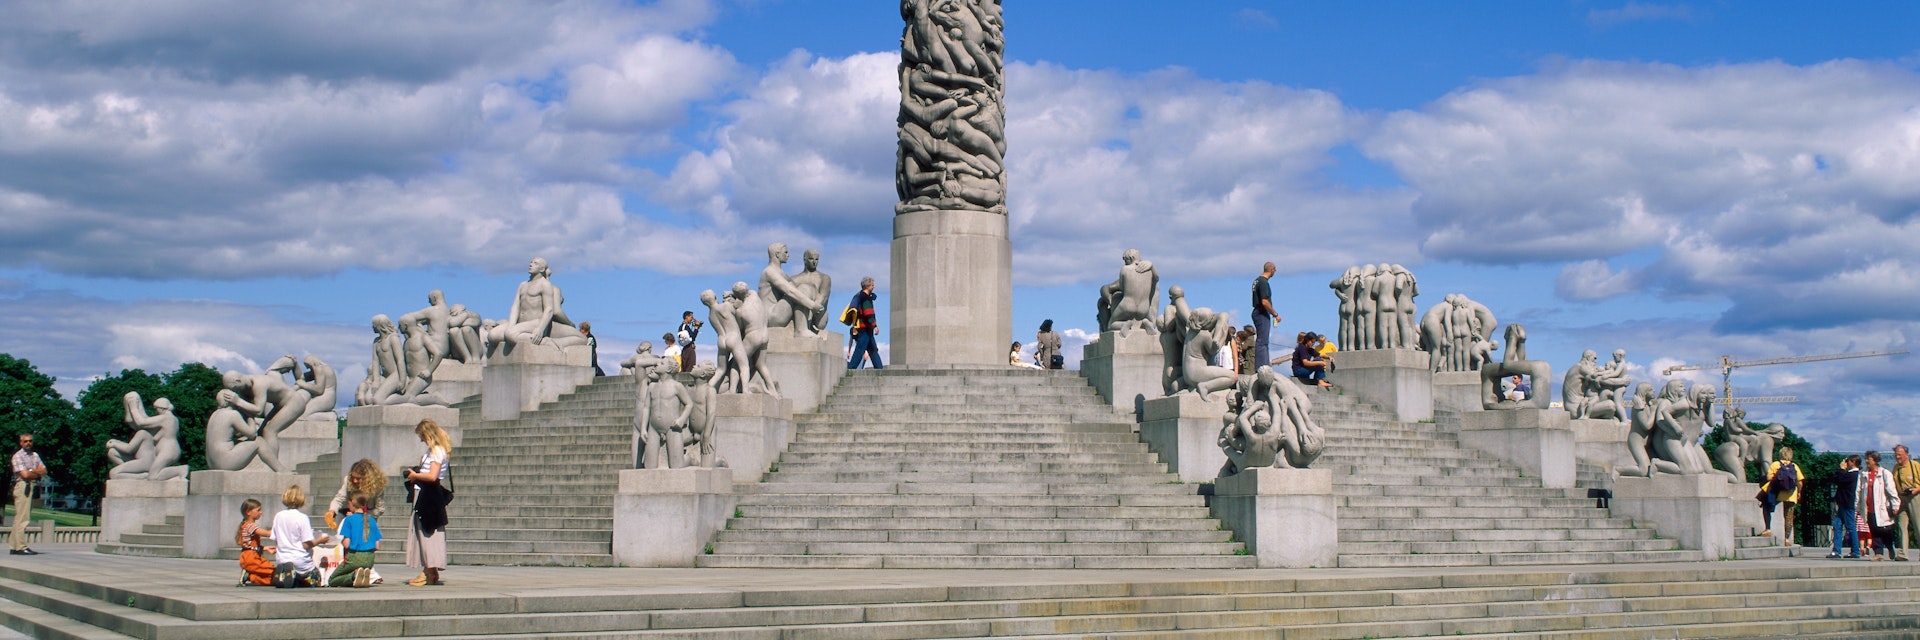 Norway, Oslo, Vigeland Sculpture Park / Monoliten Statue (by Gustav Vigeland)